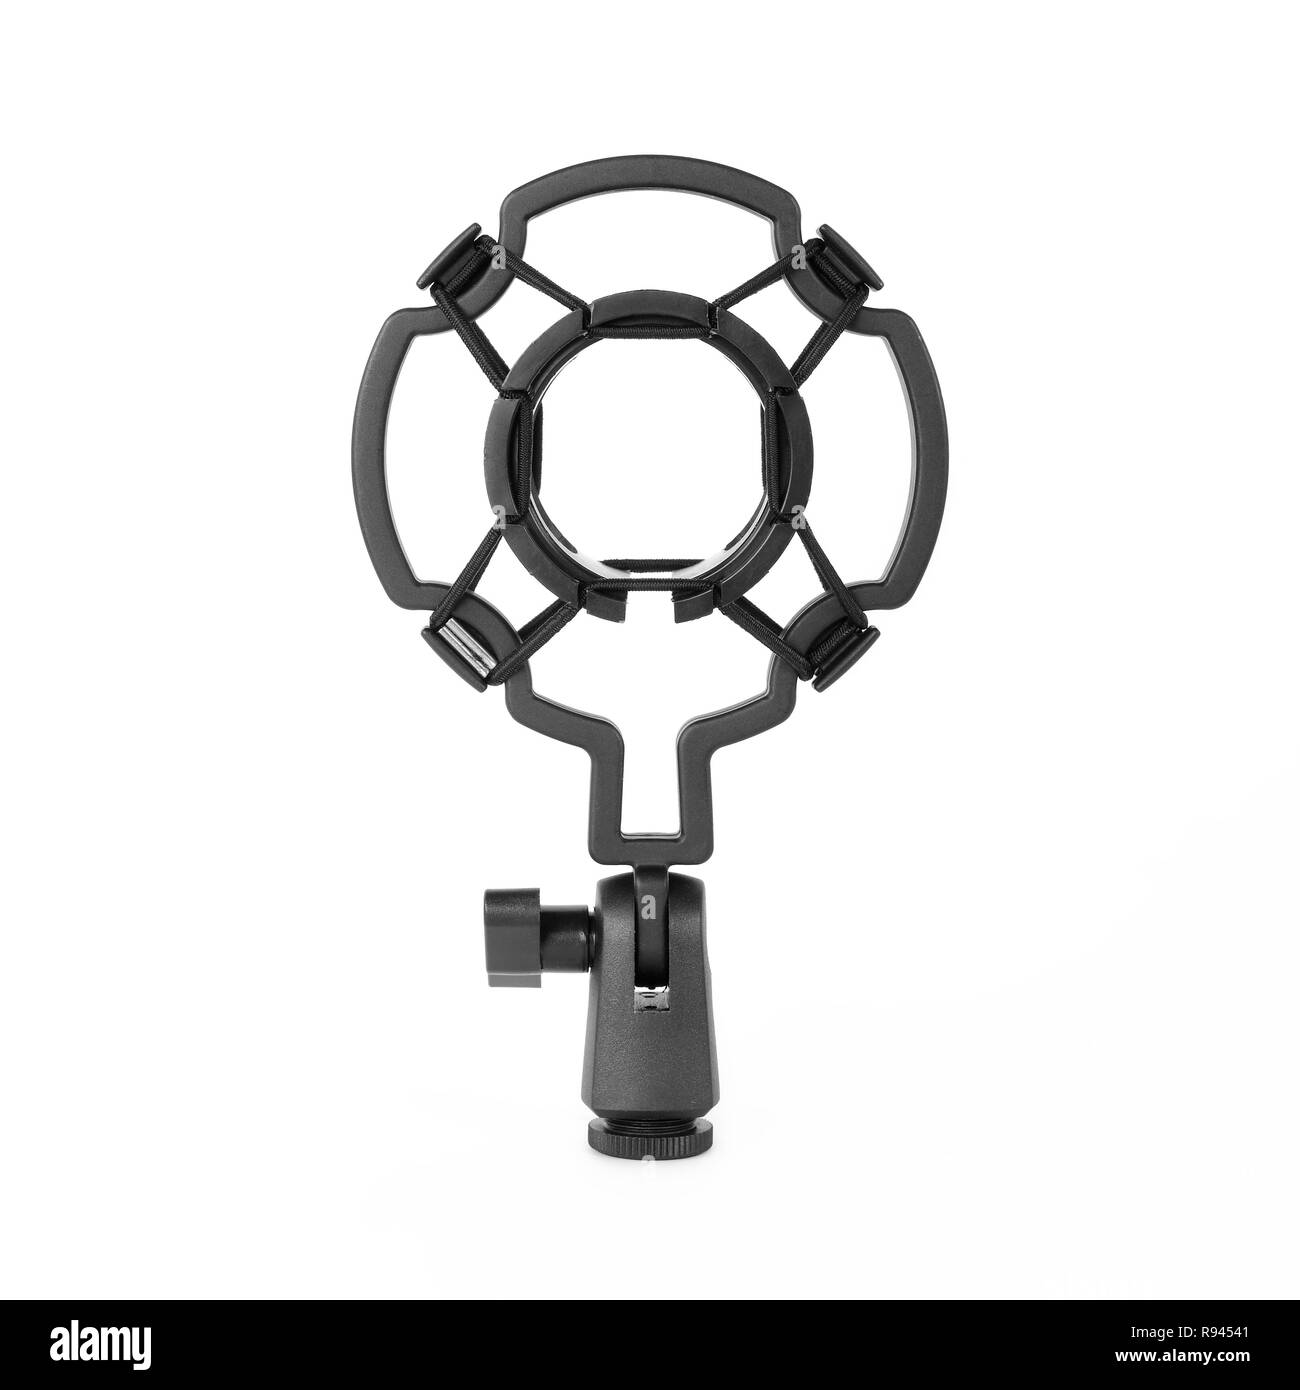 Musik und Sound - Vorderansicht Kunststoff Mikrofon Mic Shock mount passt MXL Stockfoto